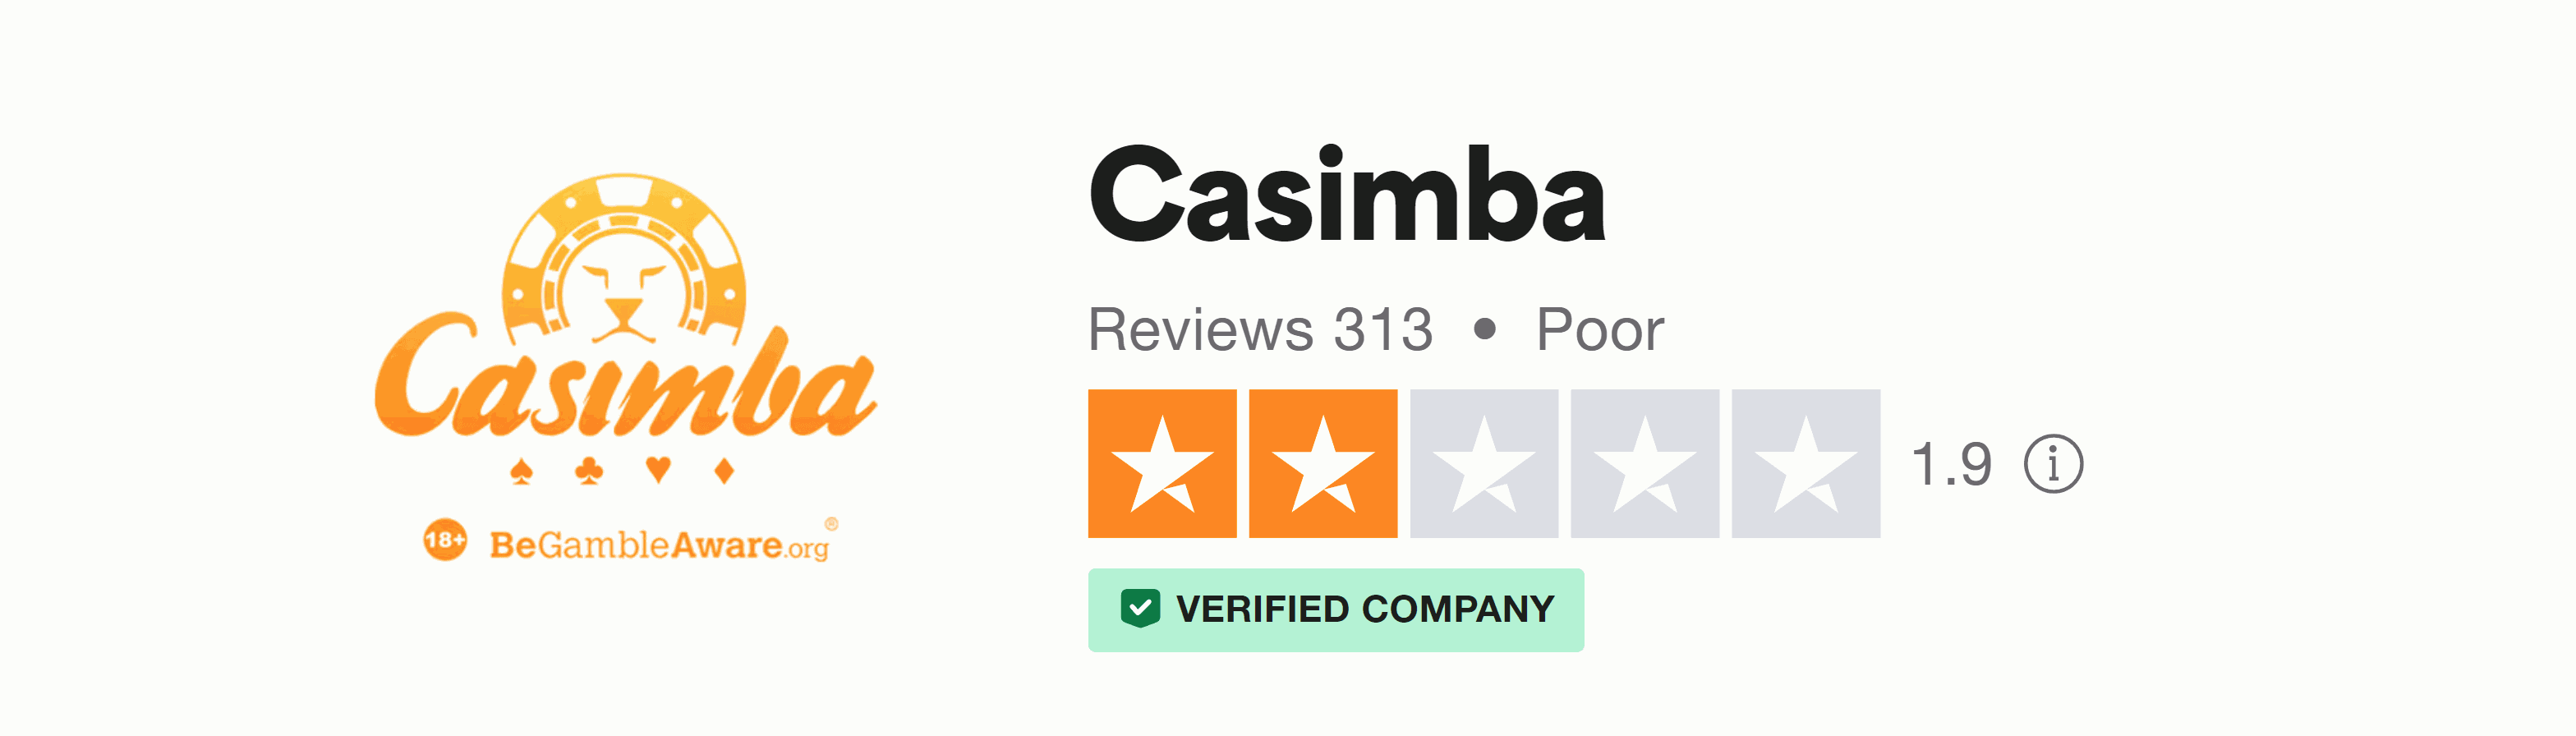 Trustpilot rating screenshot for the Casimba